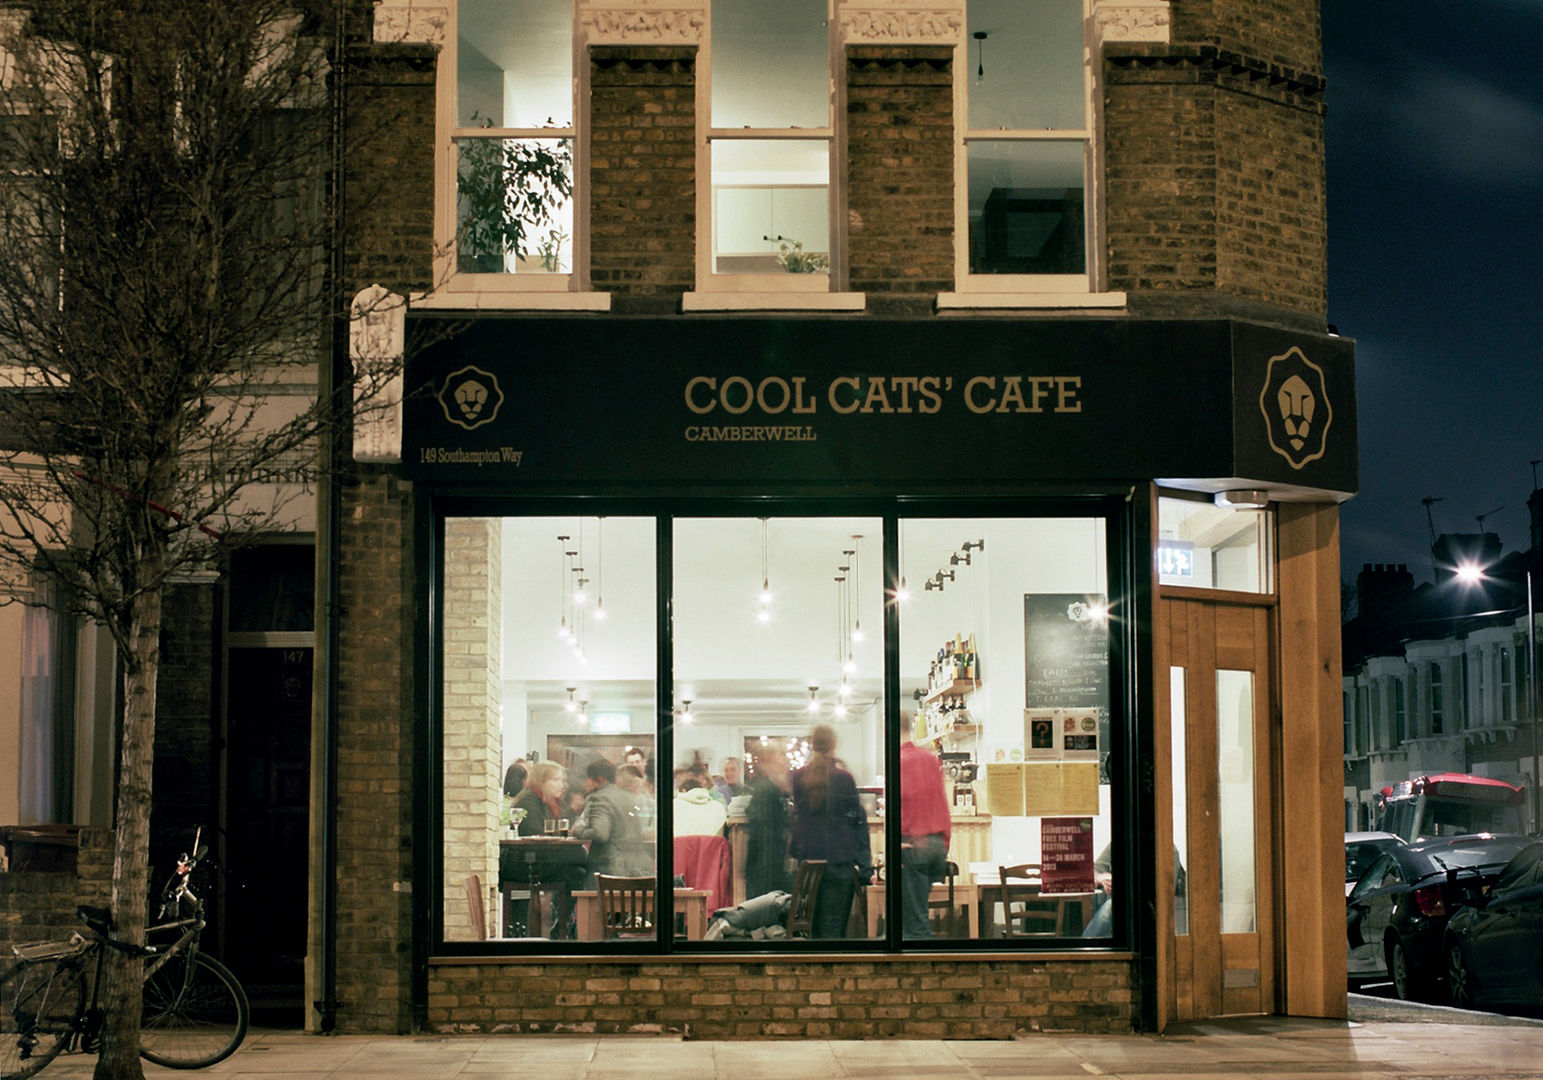 Cafe Entrance Twist In Architecture พื้นที่เชิงพาณิชย์ ร้านอาหาร